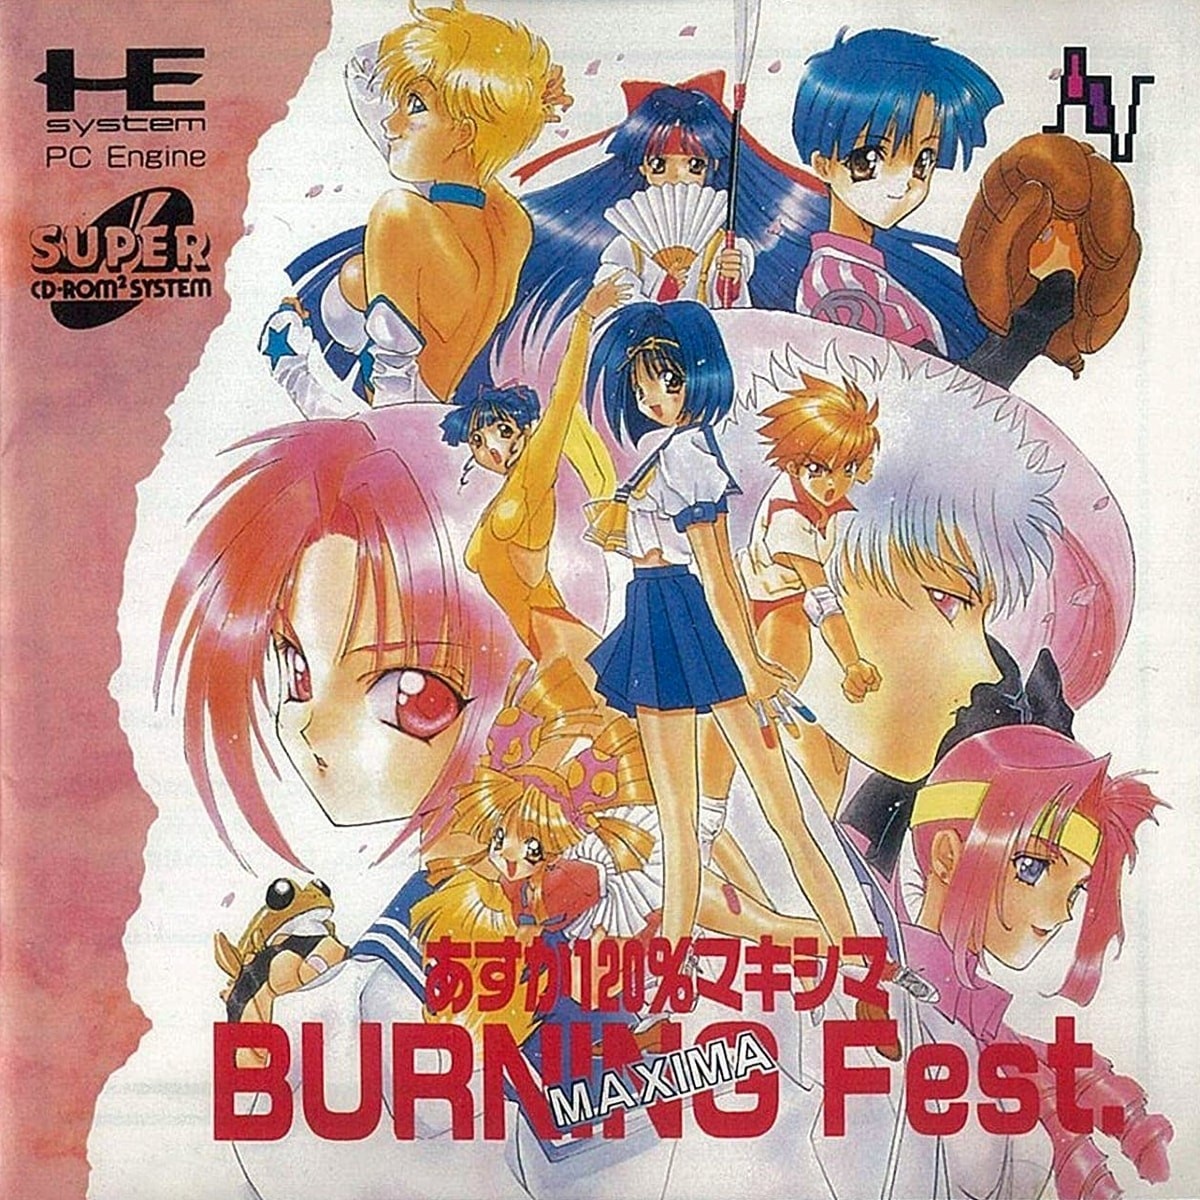 Capa do jogo Asuka 120% Maxima Burning Fest.